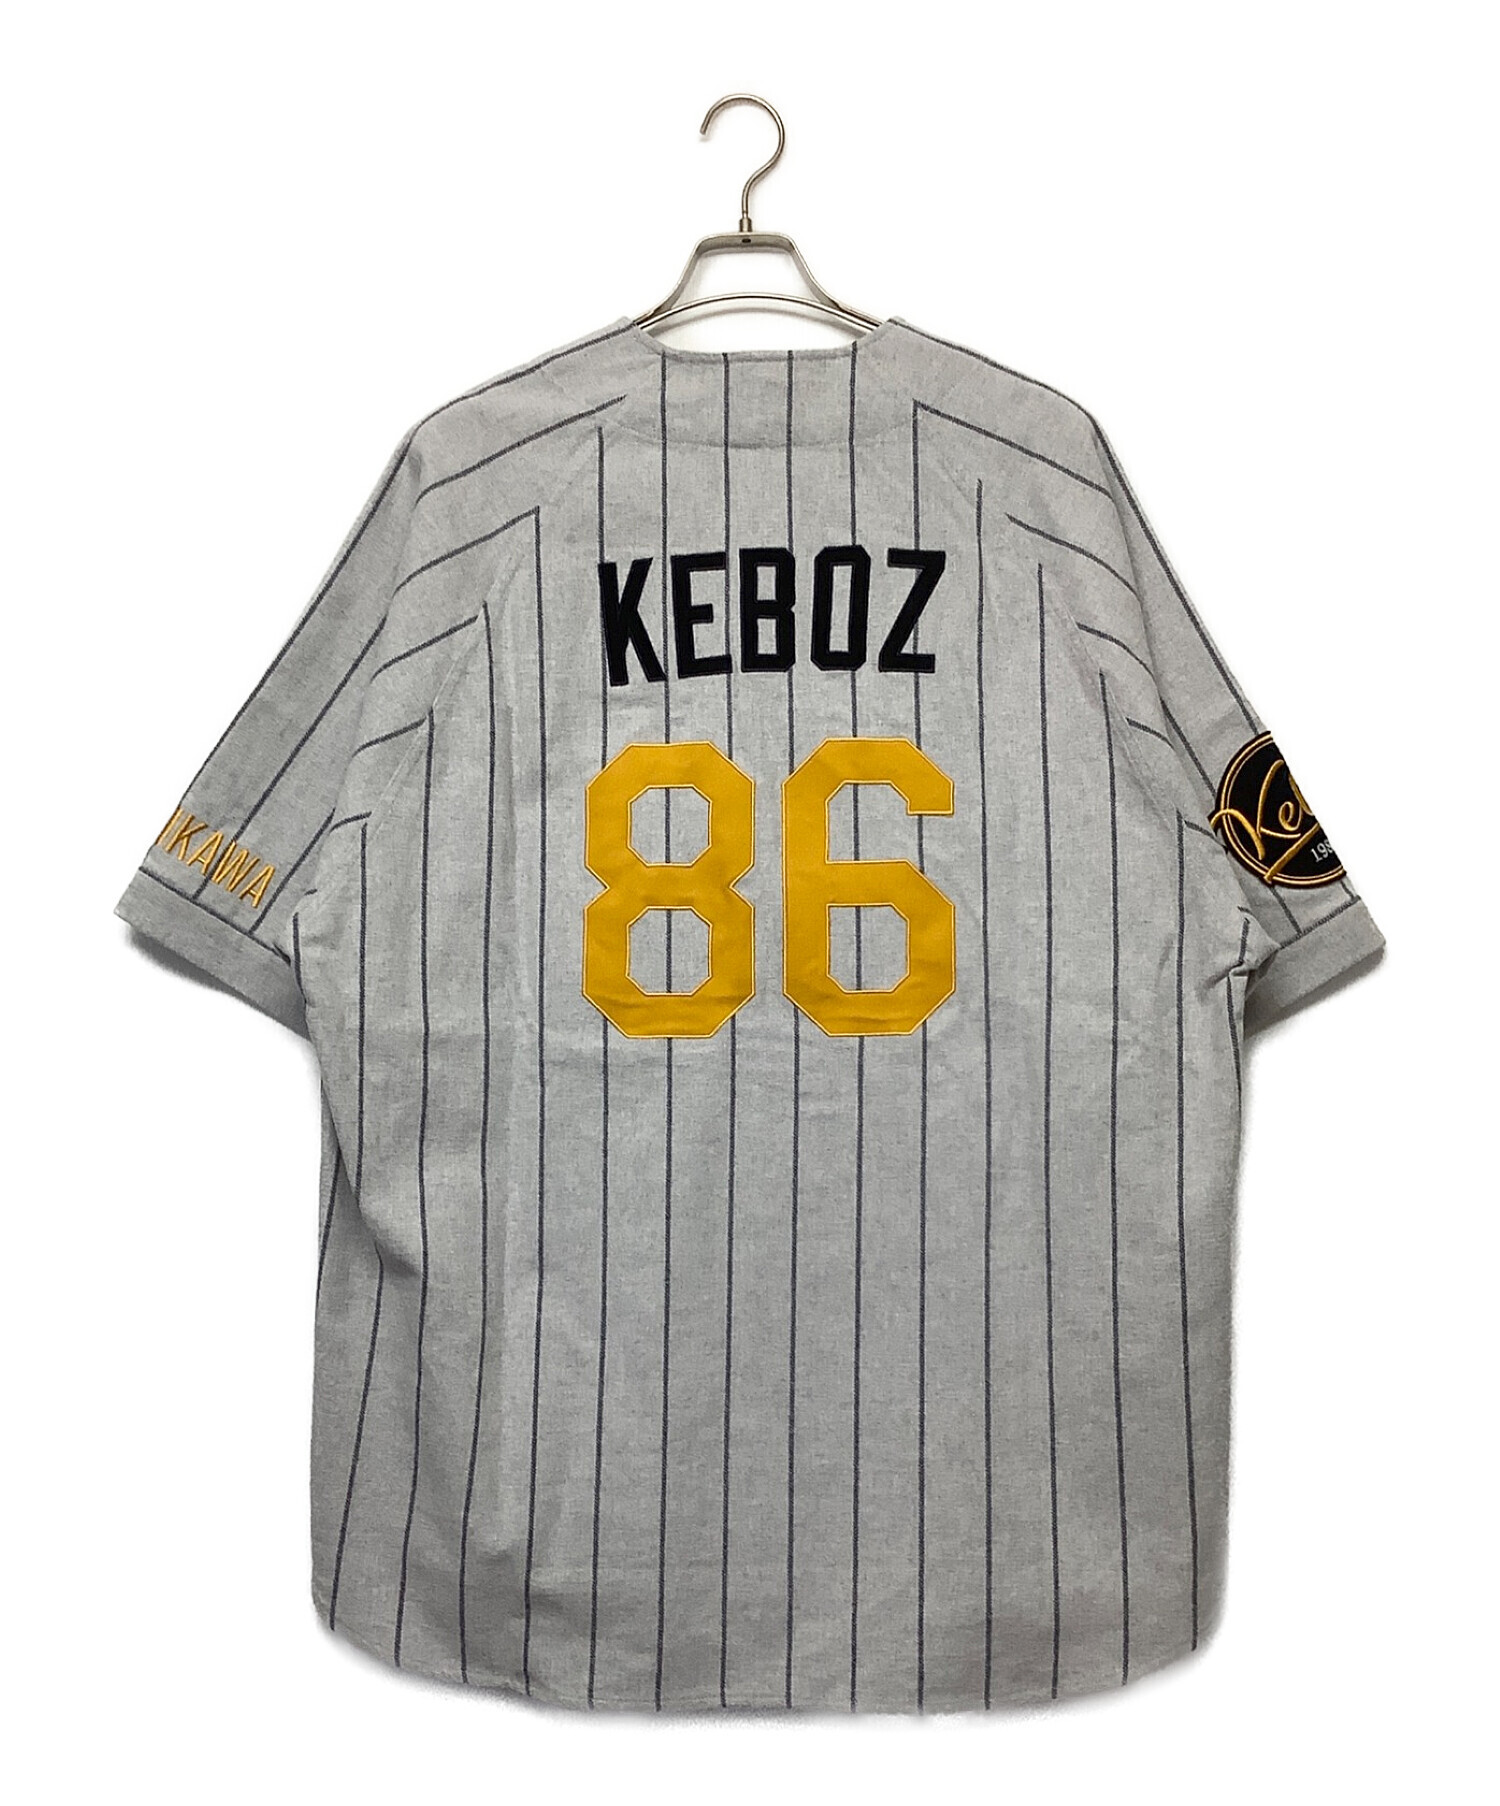 keboz freaks store ベースボールシャツ-